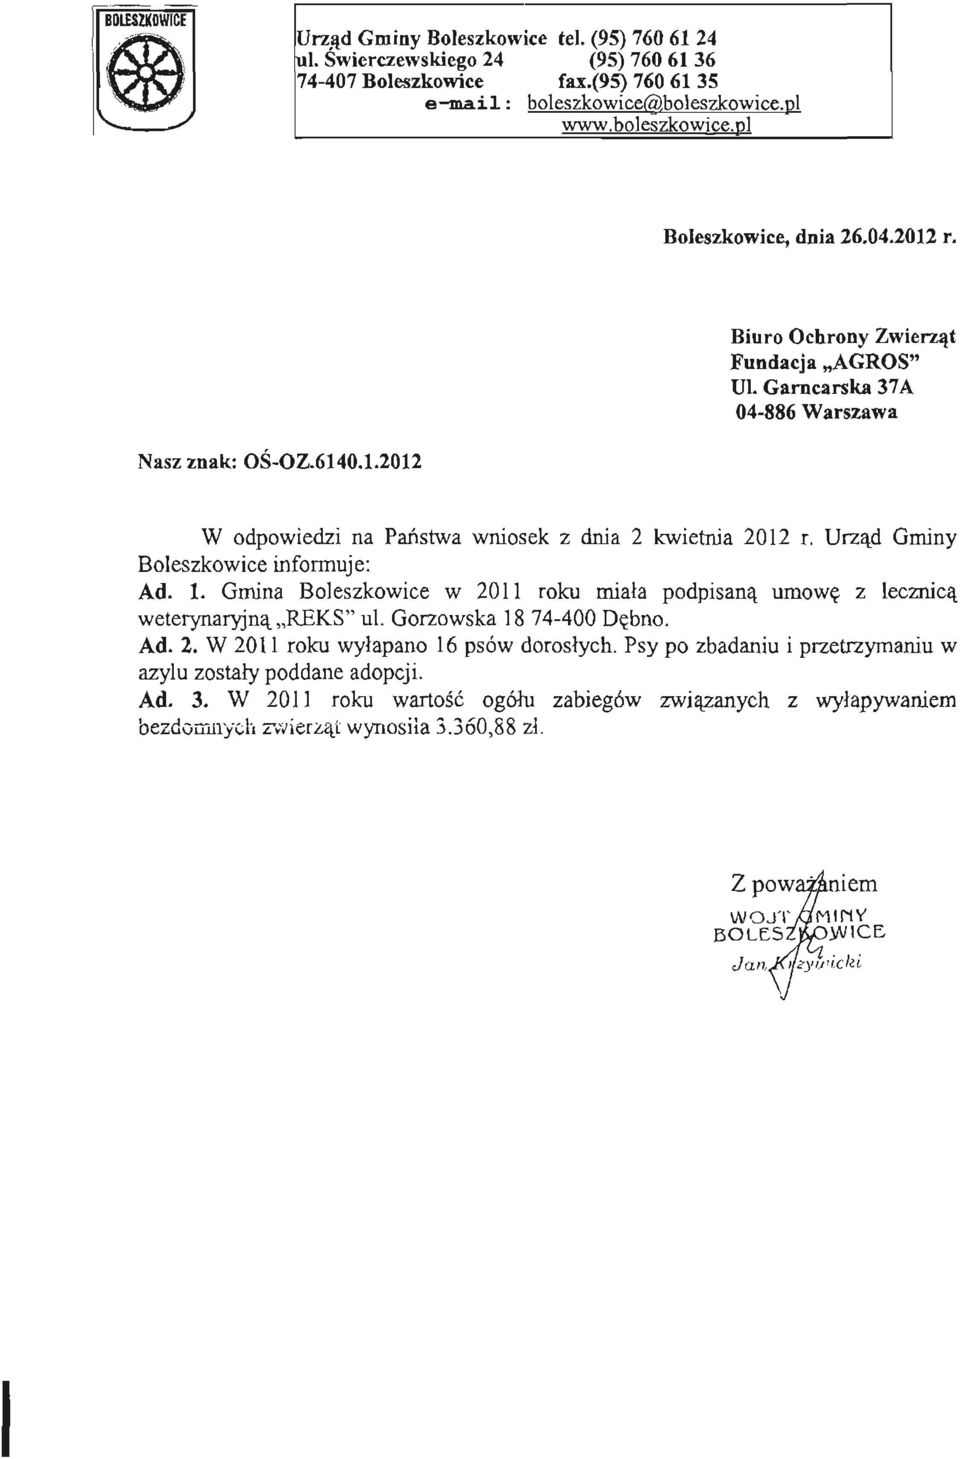 Gmina Boleszkowice w 2011 roku miała podpisaną umowę z lecznicą weterynaryjną REKS" ul. Gorzowska 18 74-400 Dębno. Ad. 2. W 2011 roku wyłapano 16 psów dorosłych.